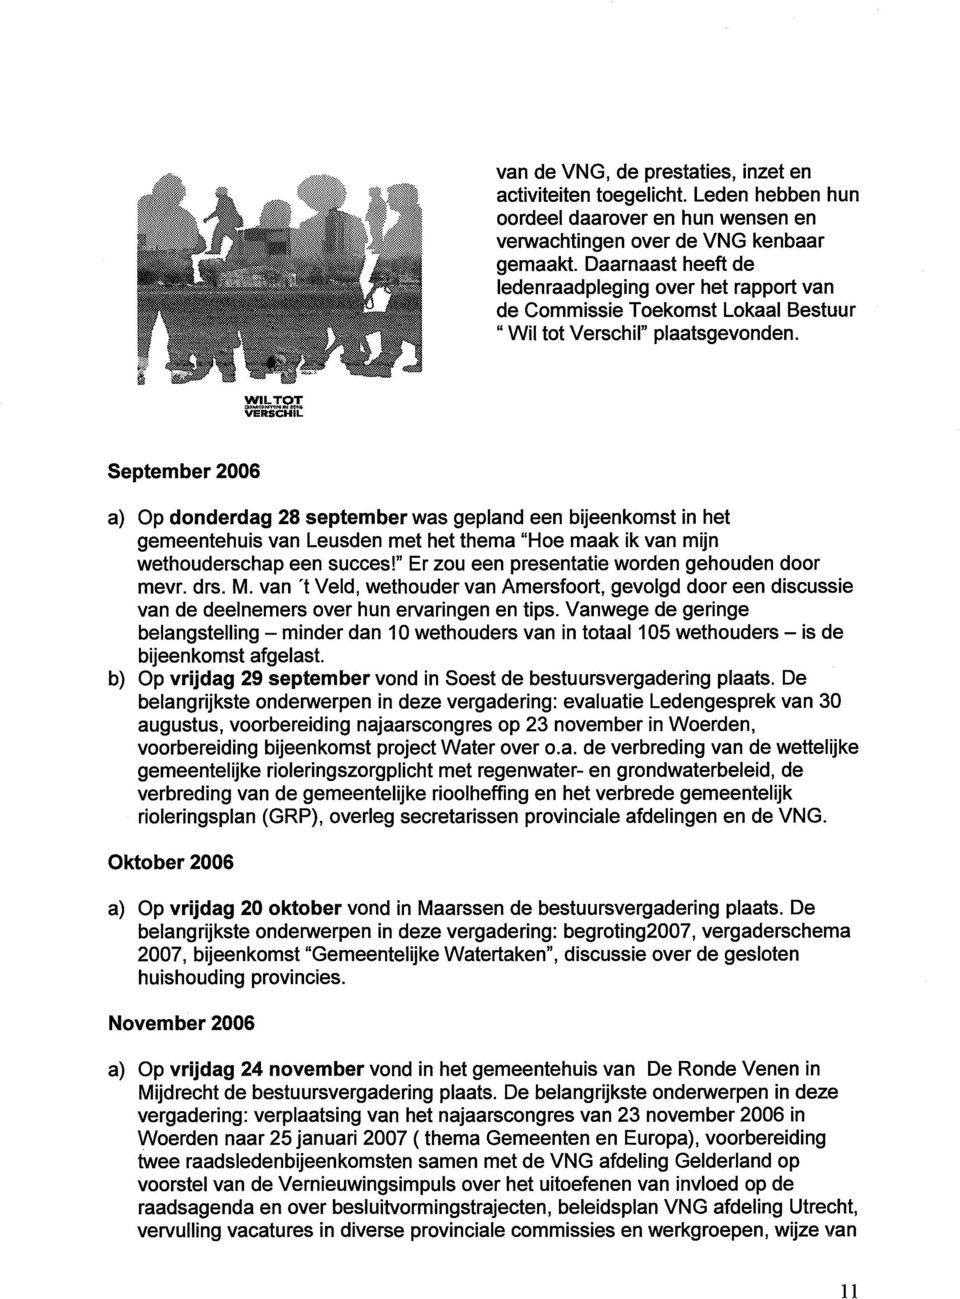 September 2006 a) Op donderdag 28 September was gepland een bijeenkomst in het gemeentehuis van Leusden met het thema "Hoe maak ik van mijn wethouderschap een succes!